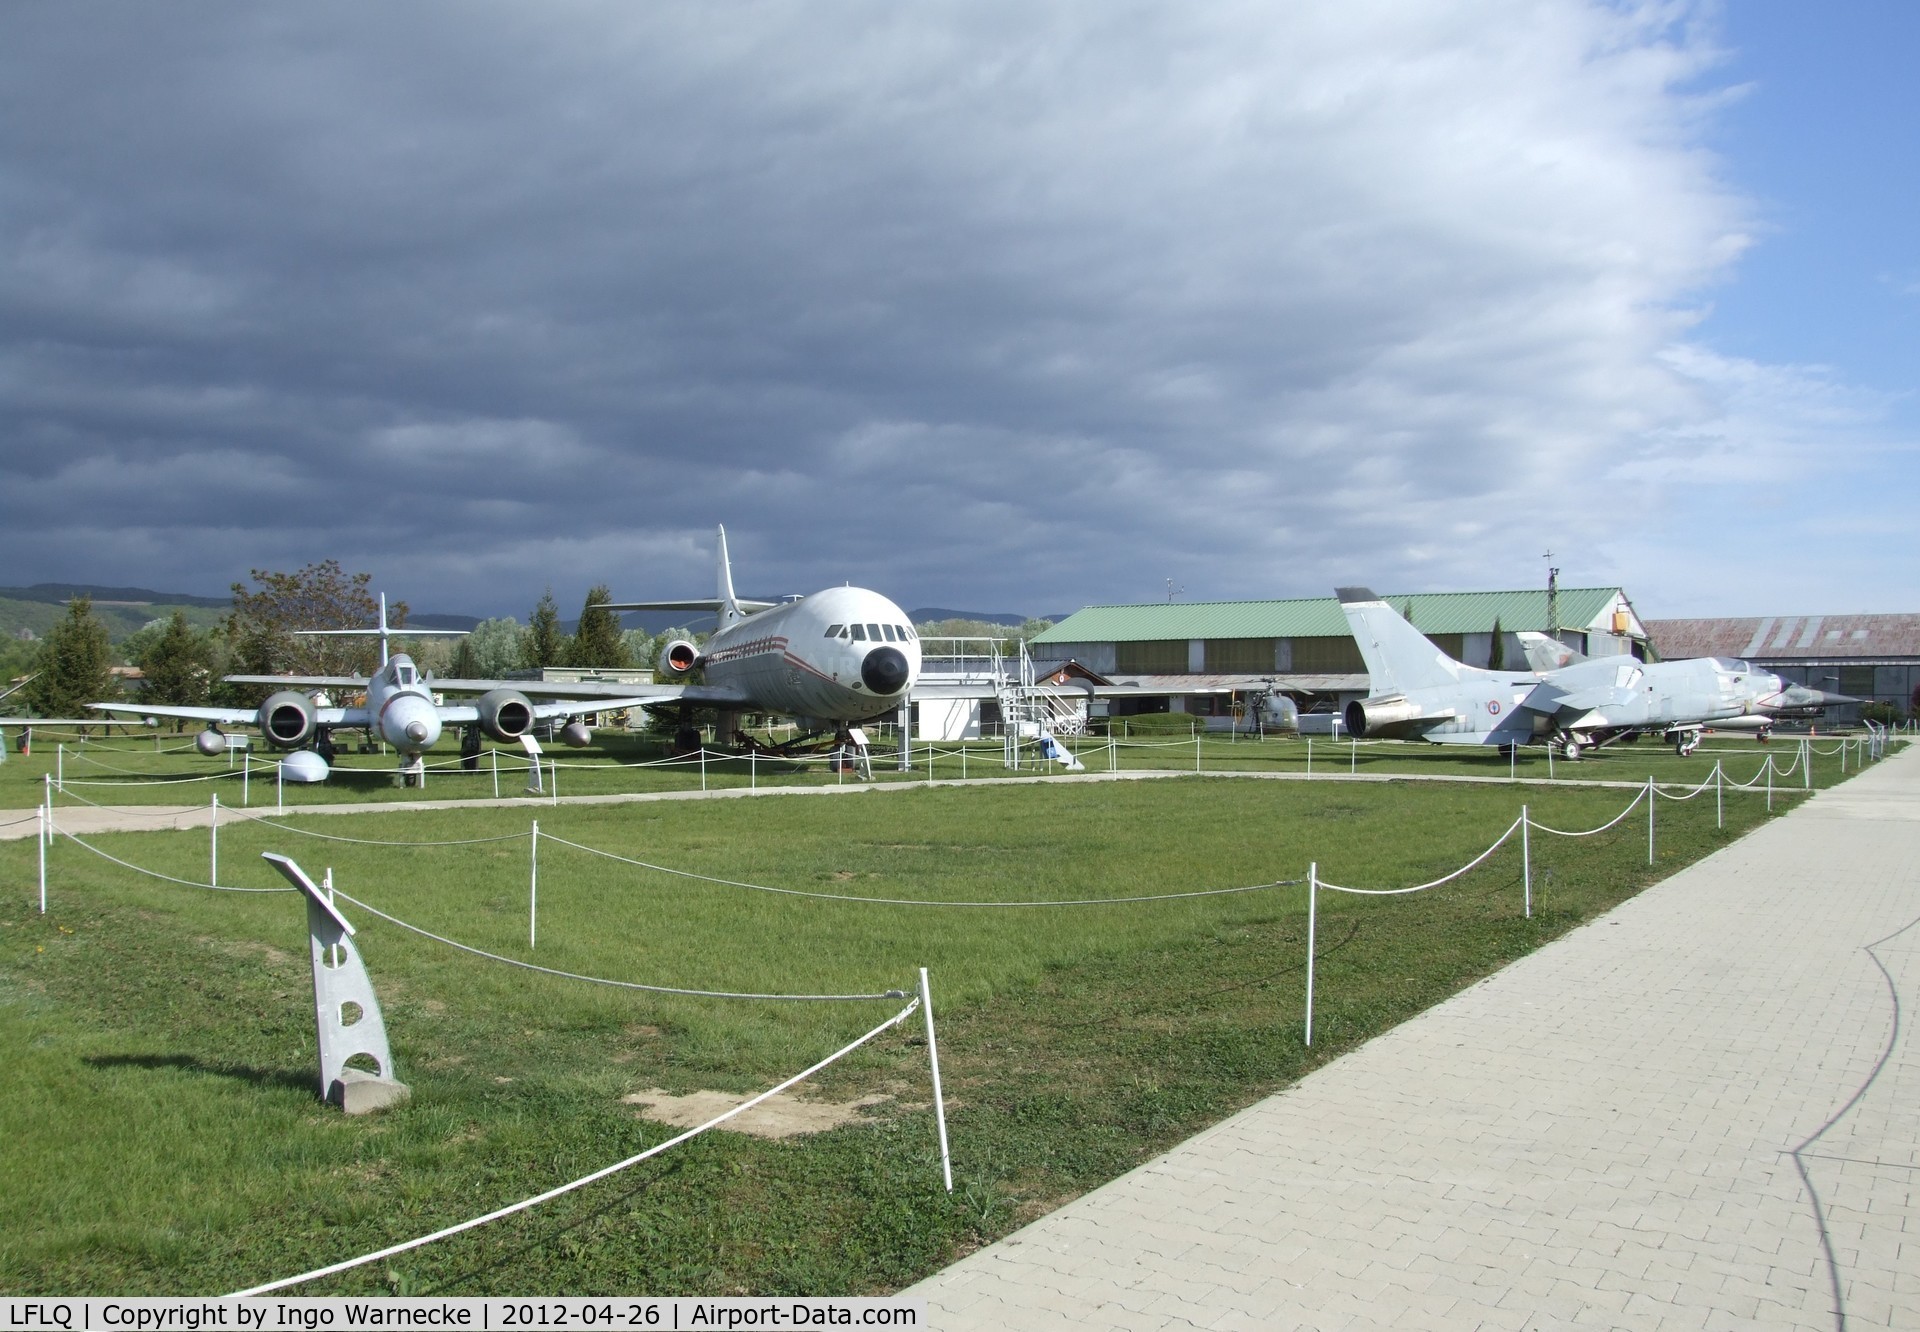 Montélimar Ancone Airport, Montélimar France (LFLQ) - the outside display of the Musée Européen de l'Aviation de Chasse at Montelimar Ancone airfield